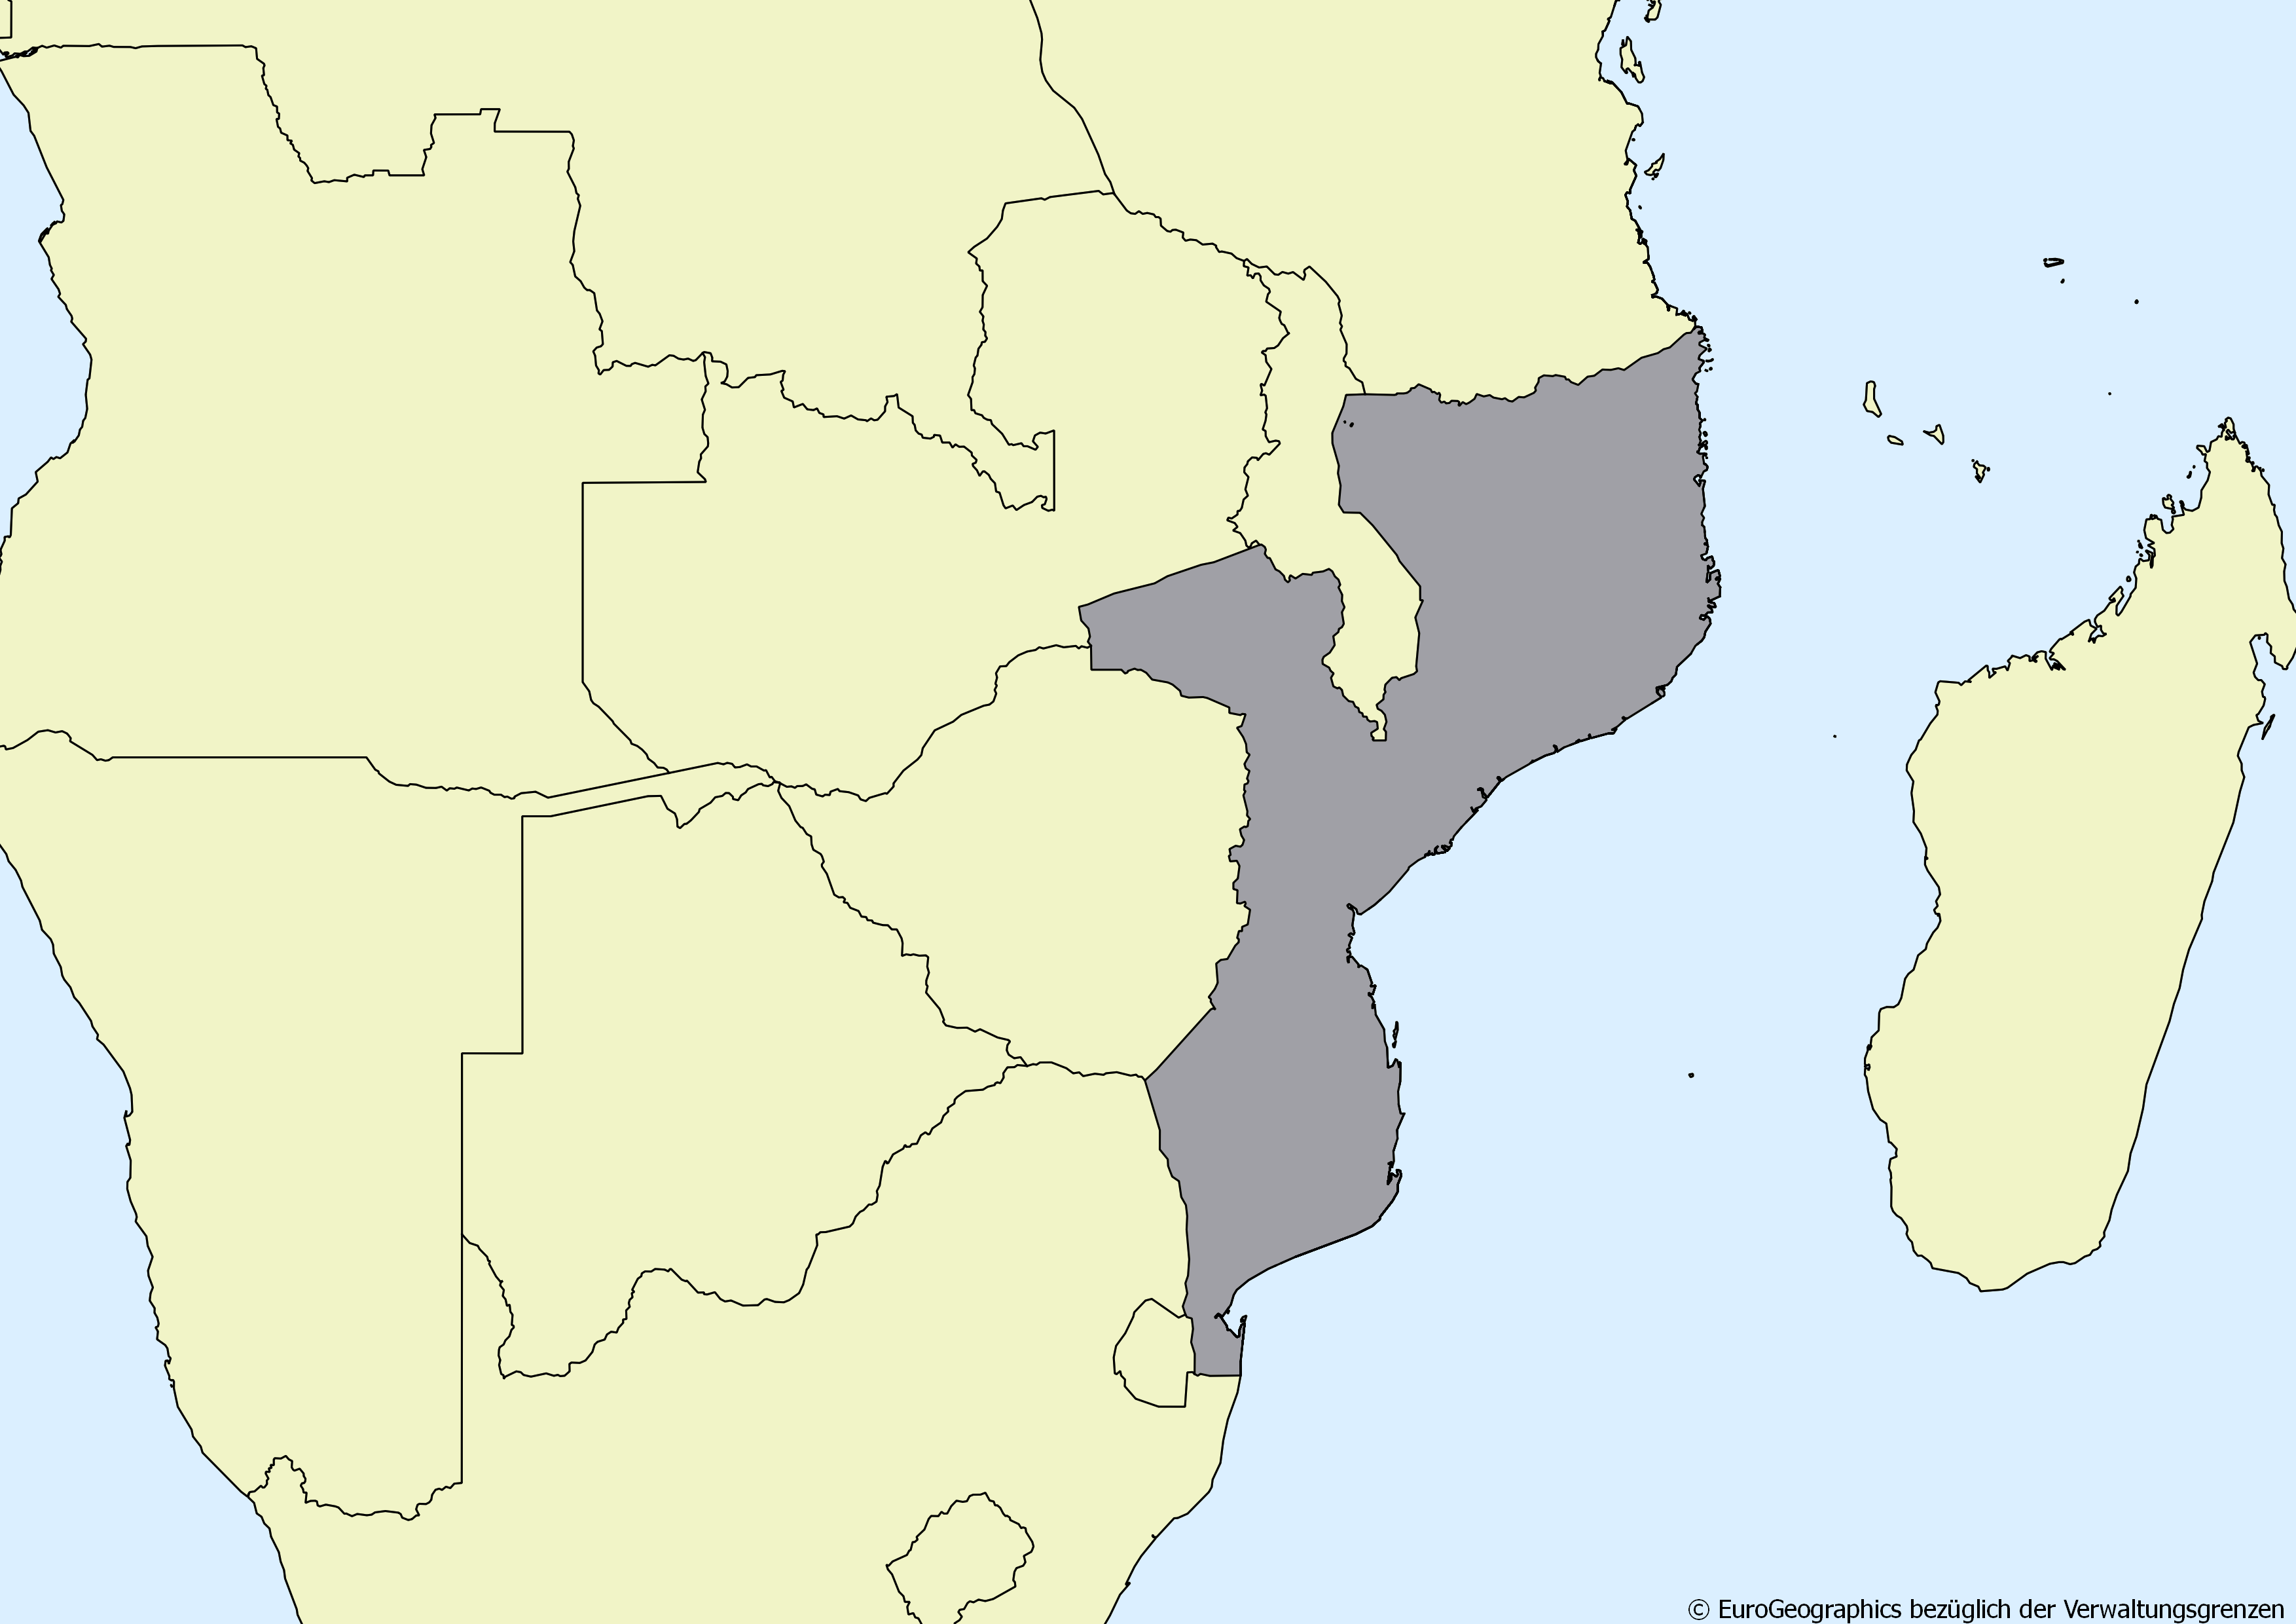 Ausschnitt einer Karte des afrikanischen Kontinents mit Ländergrenzen. Im Zentrum steht Mosambik grau hervorgehoben